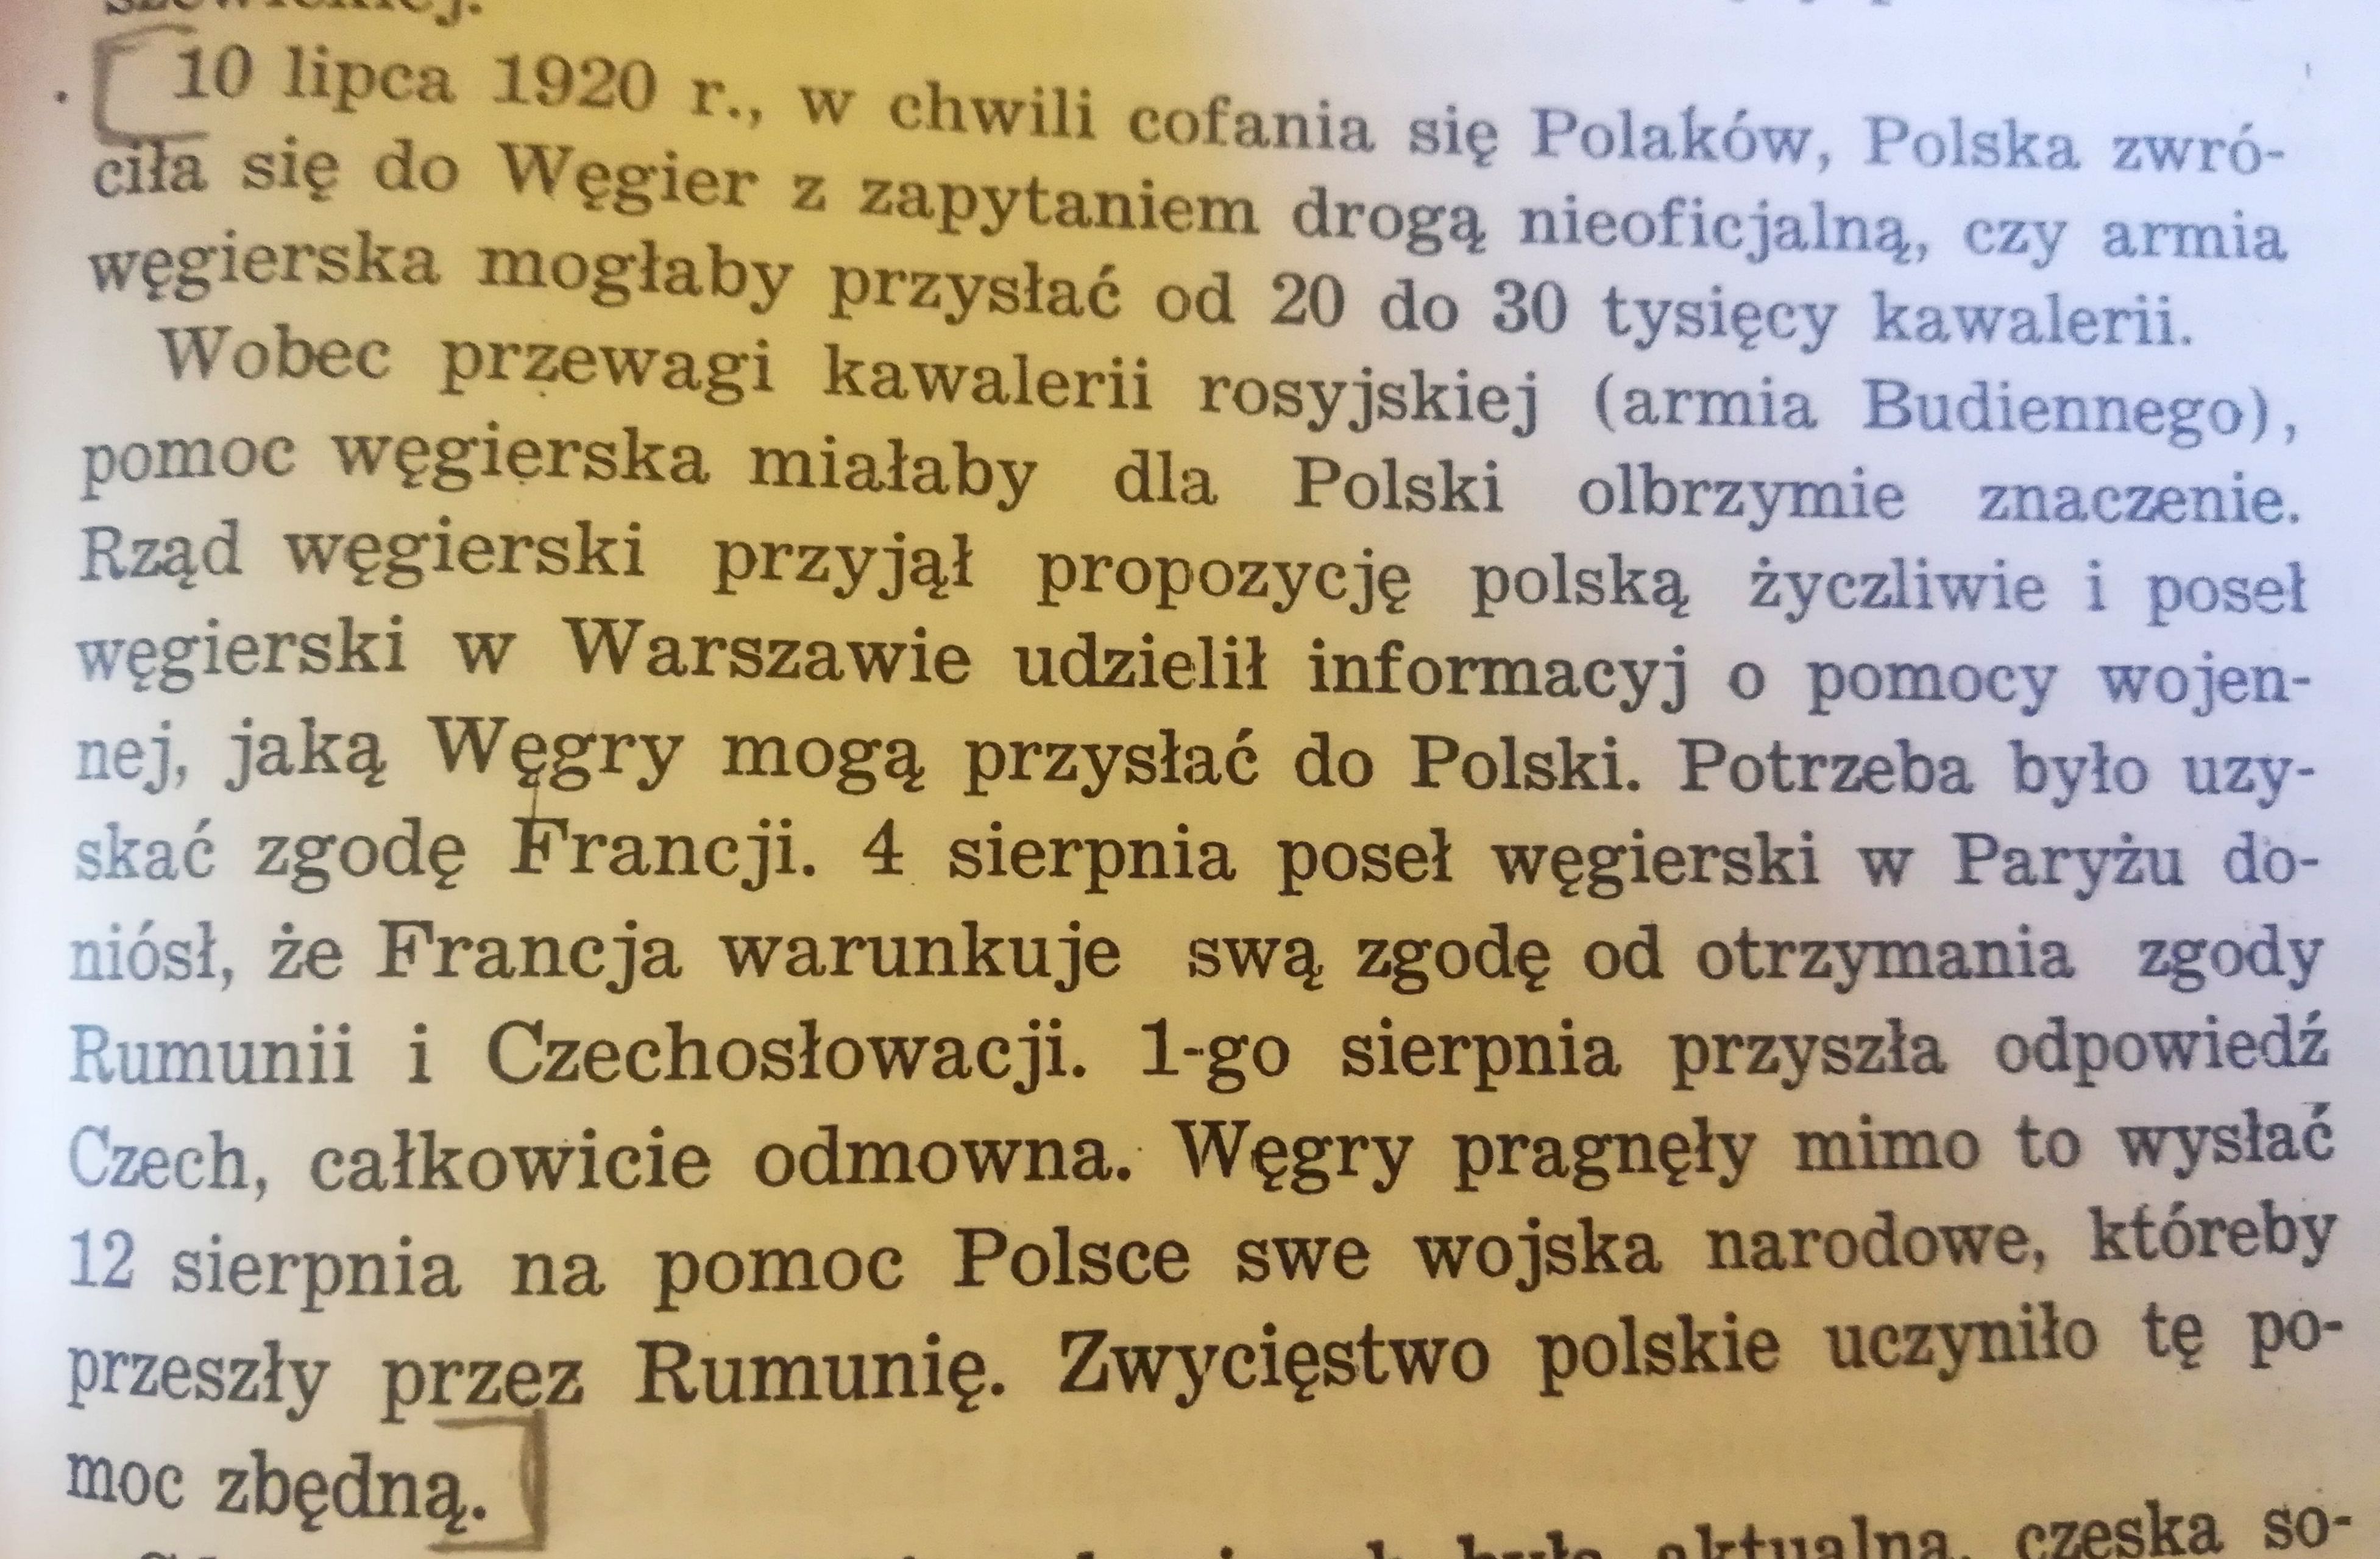 10 lipca 1920 Polska zwróciła się do rządu Węgier, czy mógłby przysłać 20-30 tysięcy kawalerii. Węgry odpowiedziały ...